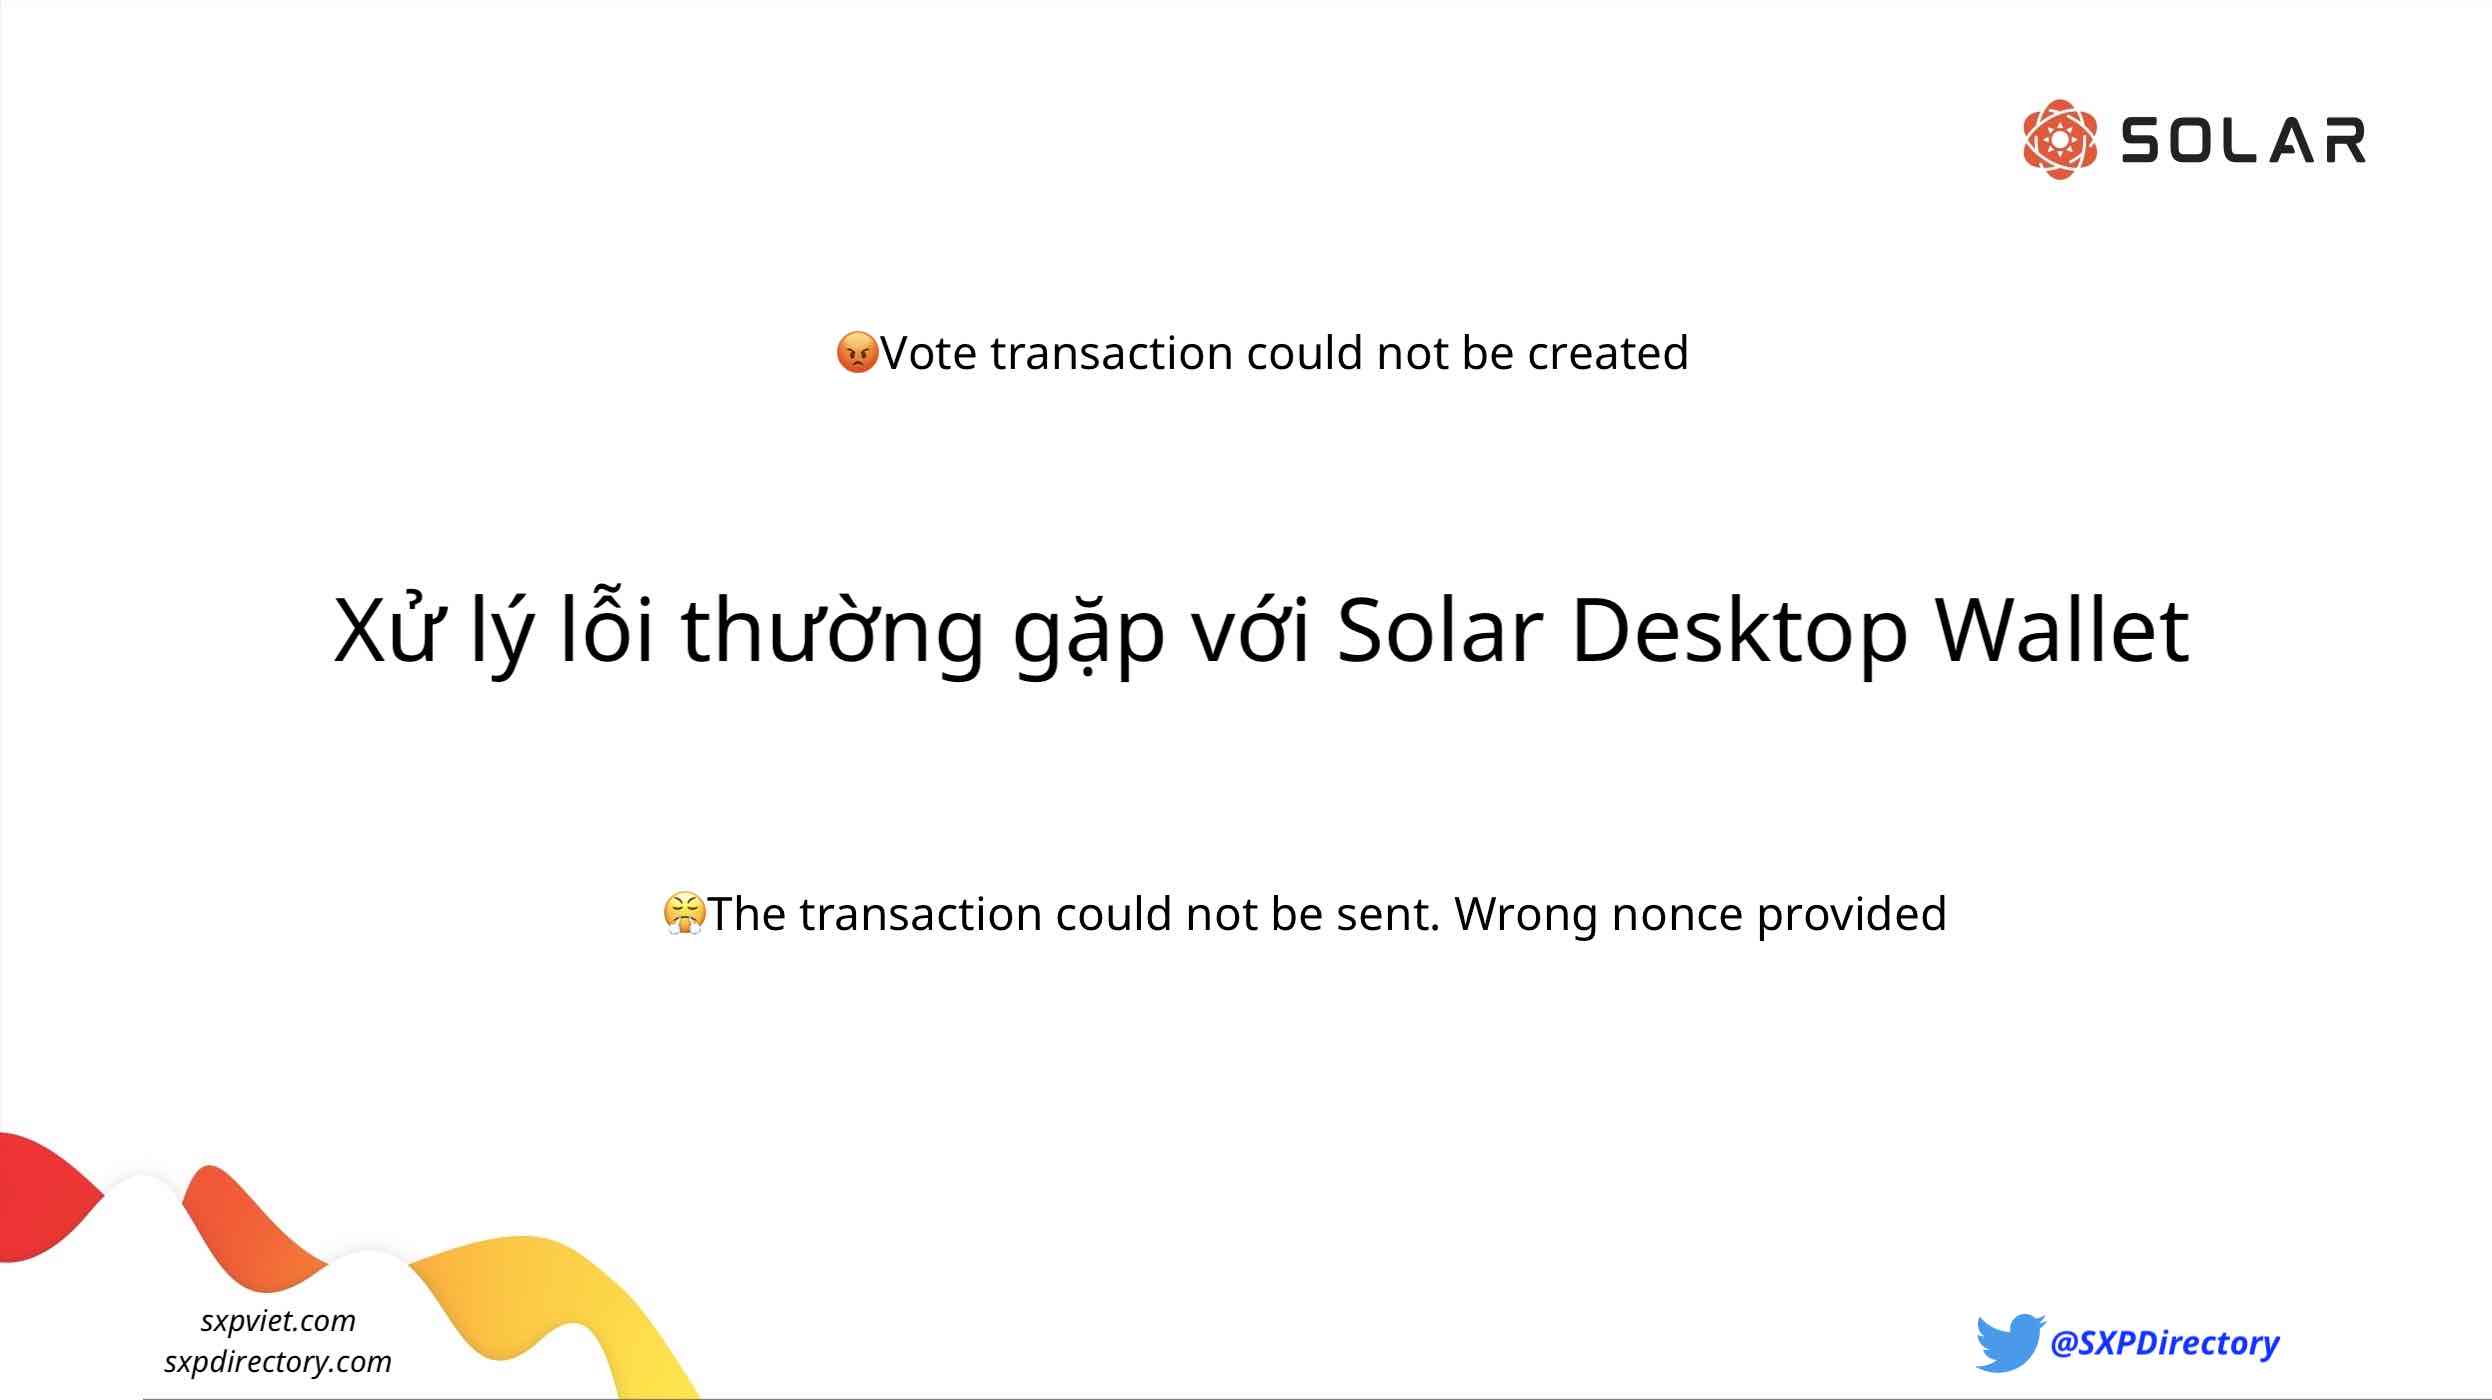 Khắc phục lỗi thường gặp với Solar Desktop Wallet